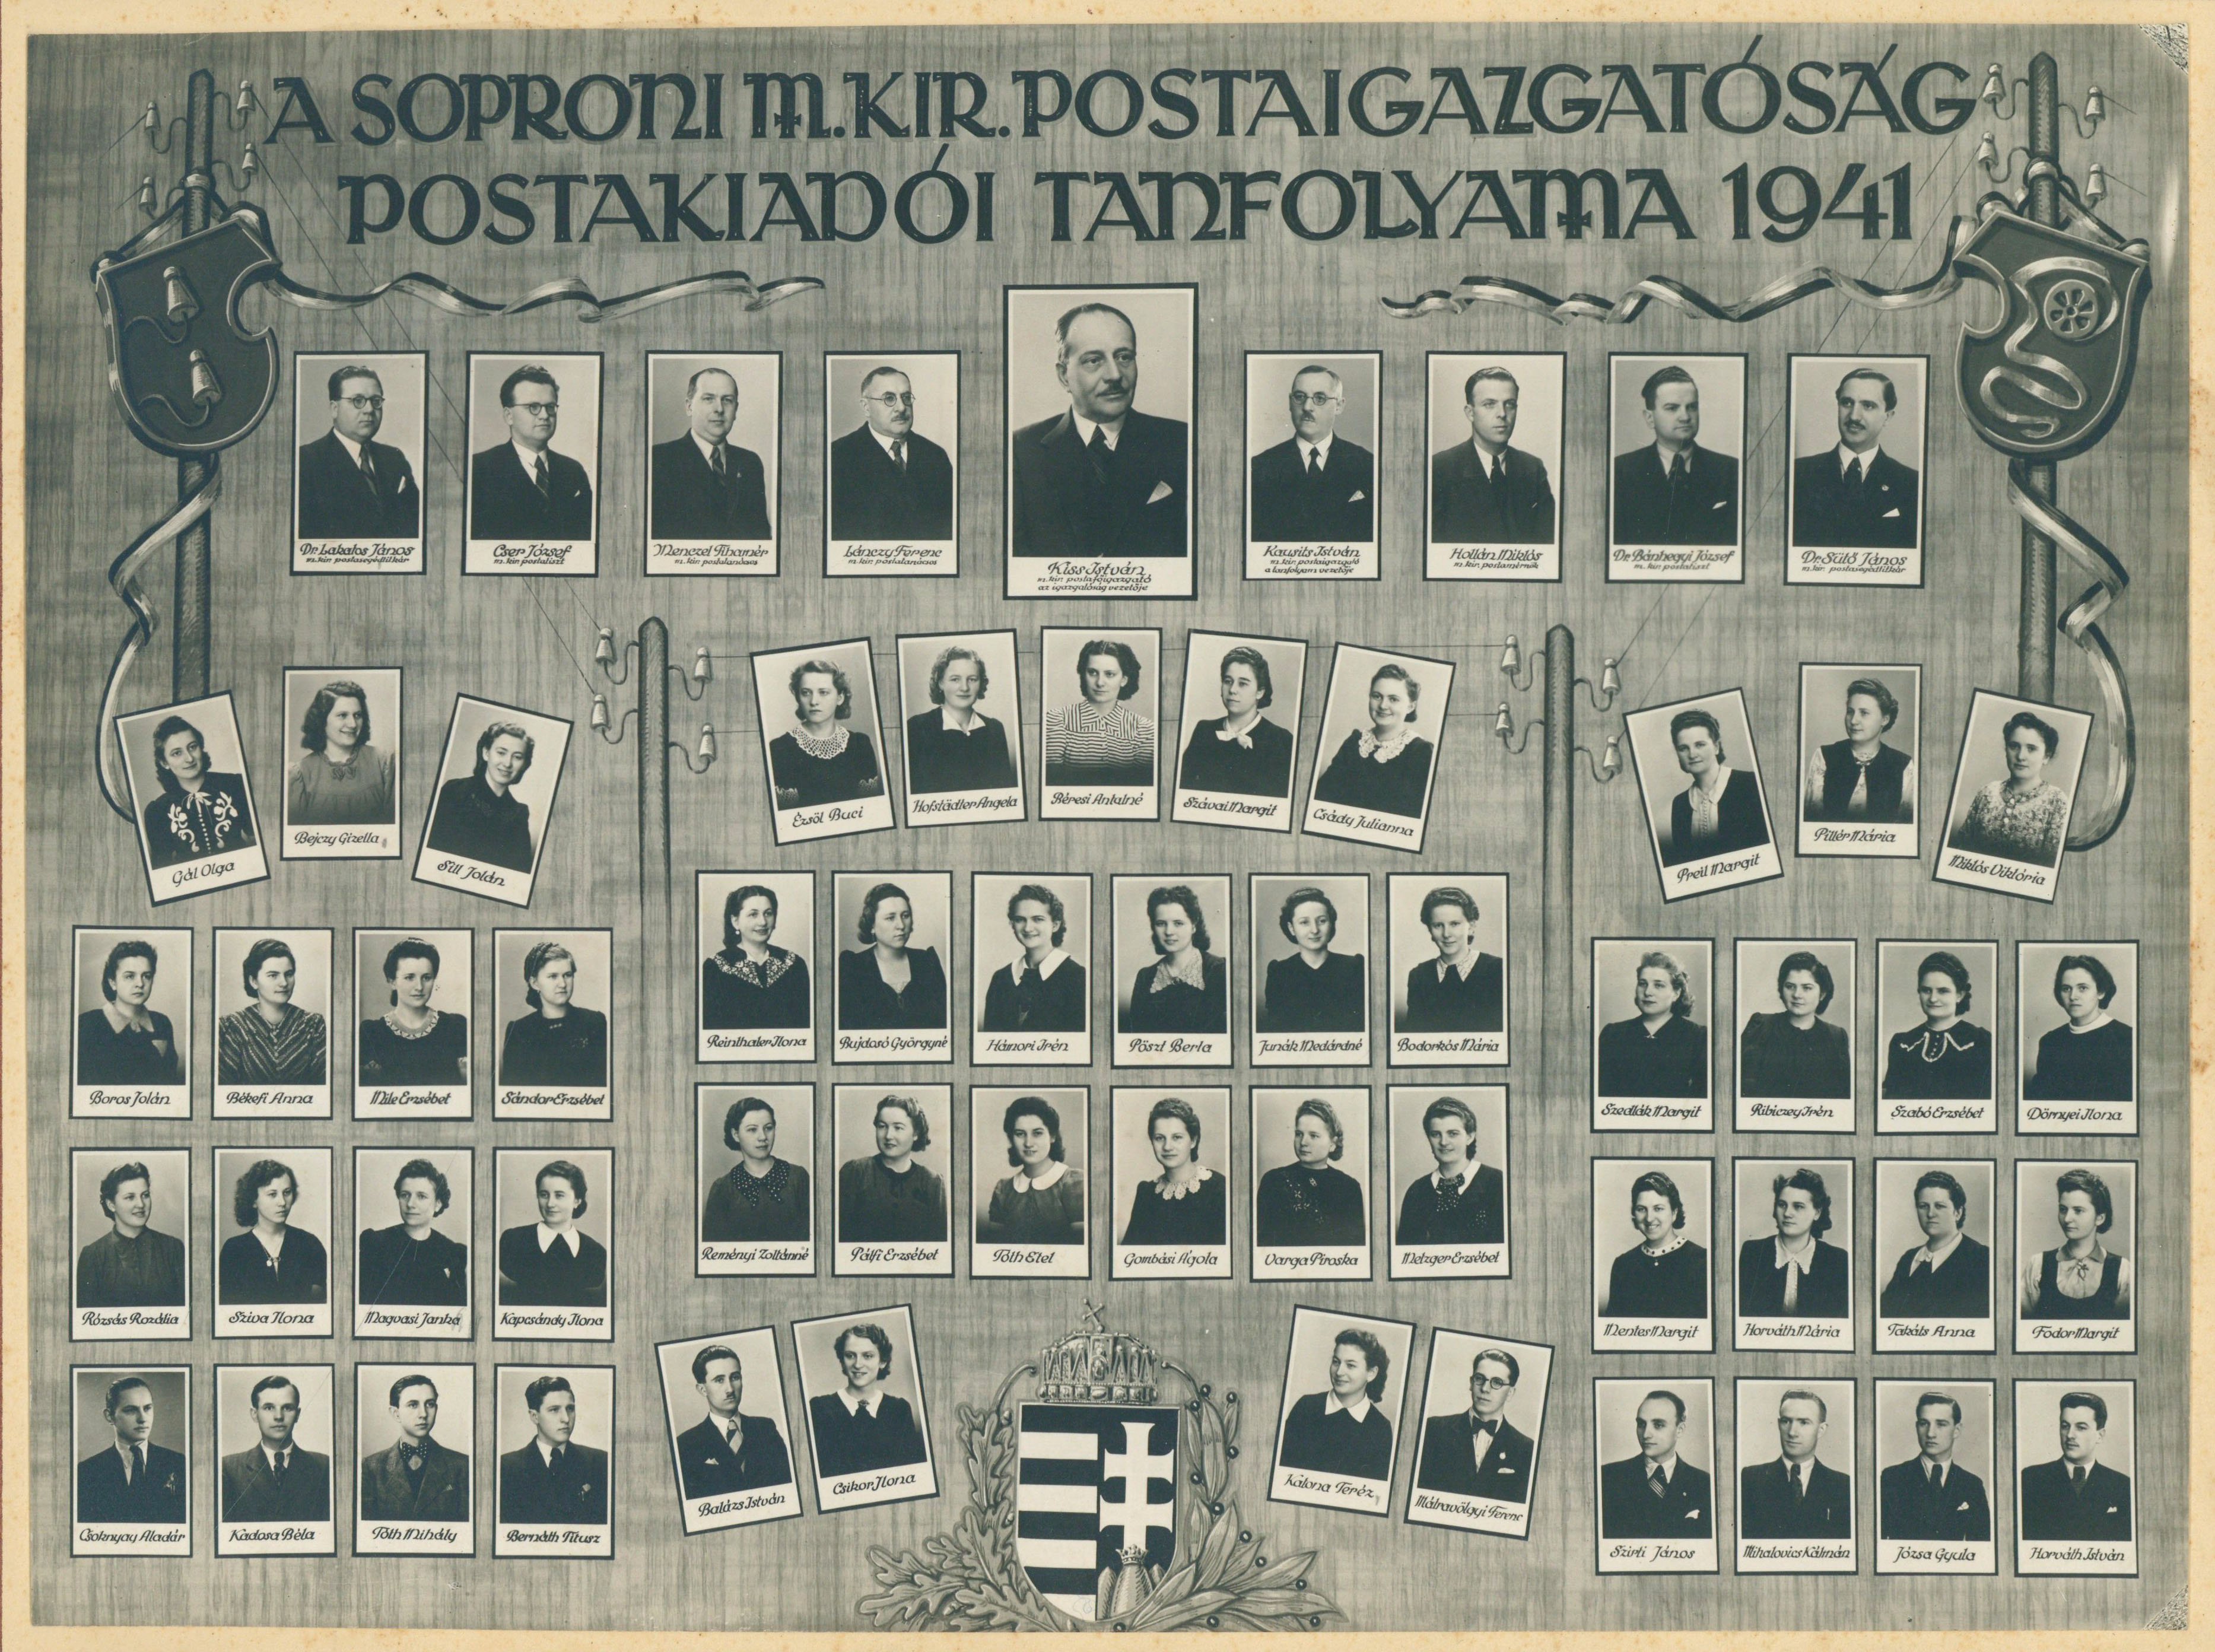 Soproni postakiadói tanfolyam tablóképe 1941-ben (Postamúzeum CC BY-NC-SA)